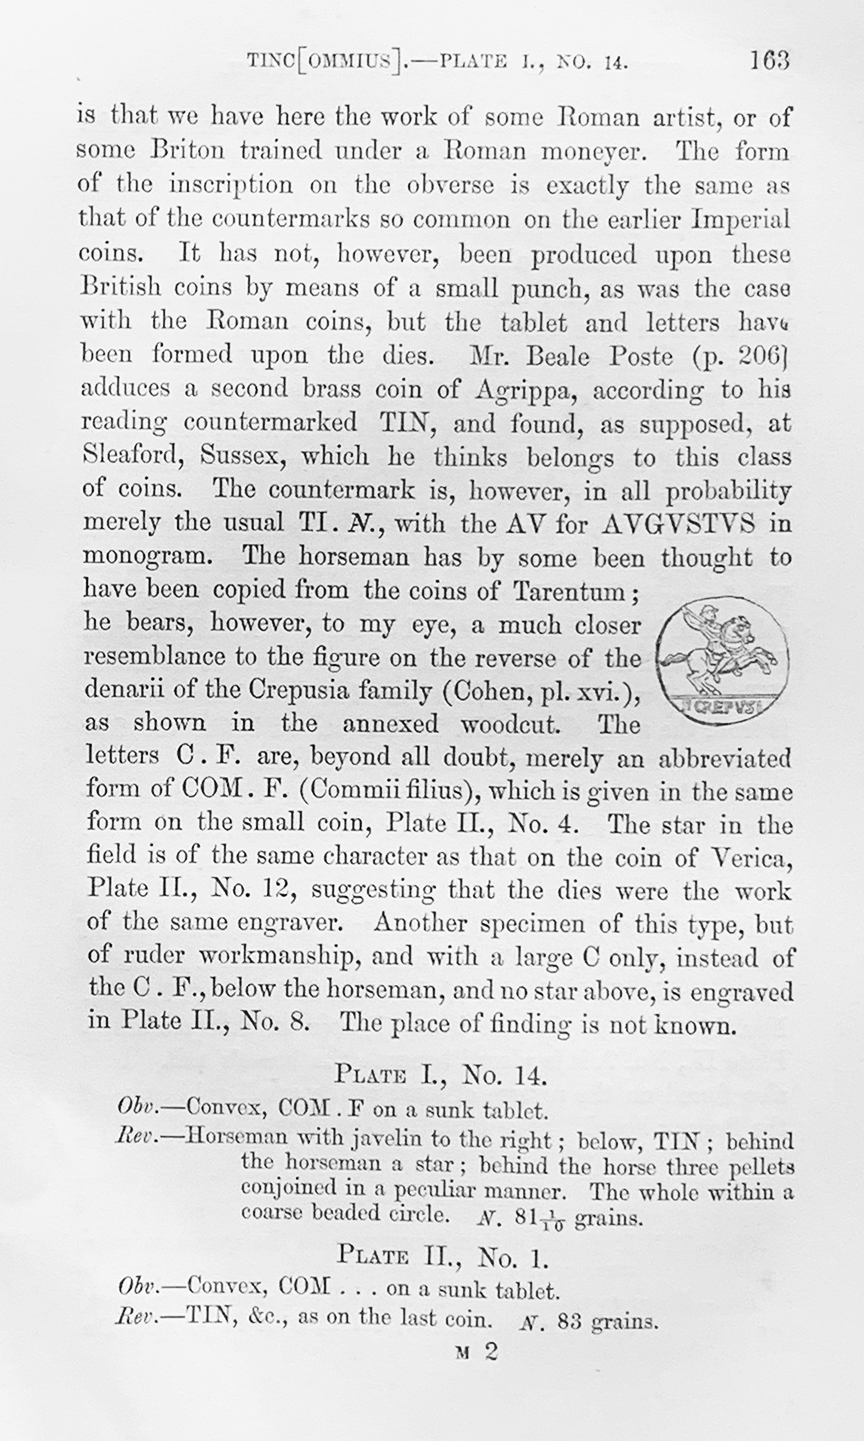 Evans 1864 p. 163 P. Crepusius Prototype